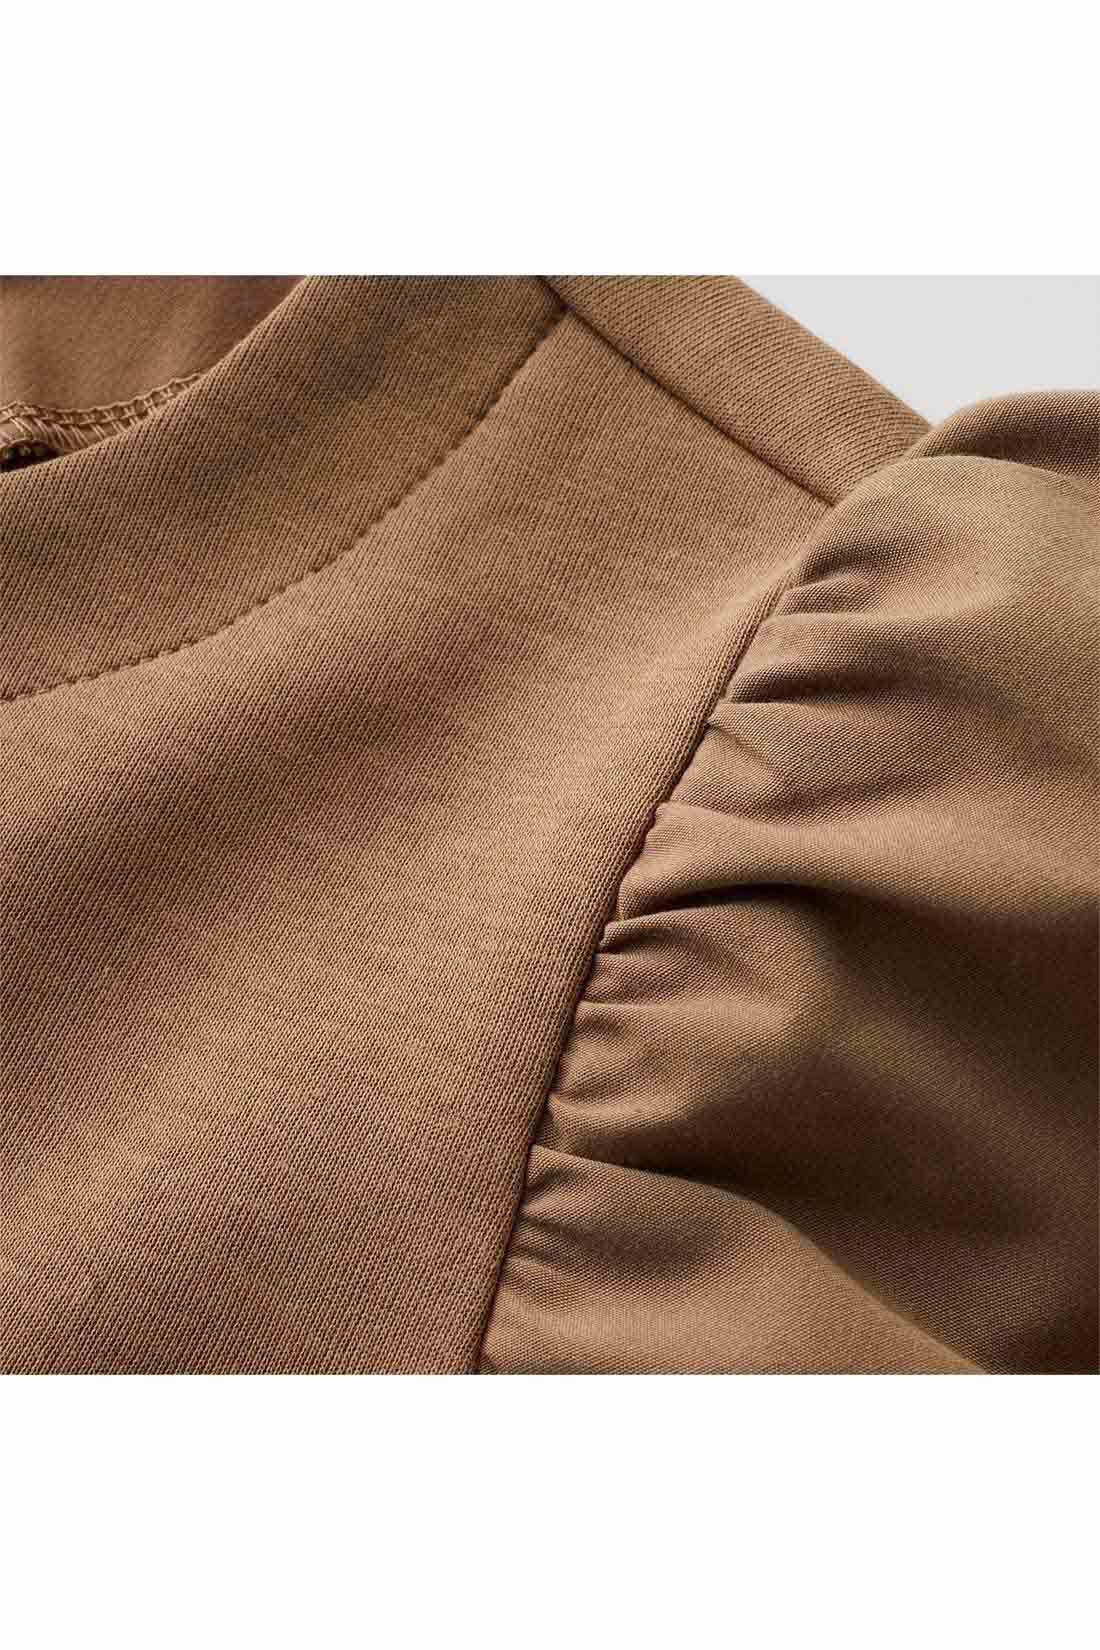 IEDIT|IEDIT[イディット]　ふんわり袖デザインが華やかな 異素材切り替えプルオーバー〈ブラック〉|袖は張り感のある布はく素材で軽やかに。身ごろはほどよく厚みがあり表面感のきれいなカットソー素材。 ※お届けするカラーとは異なります。